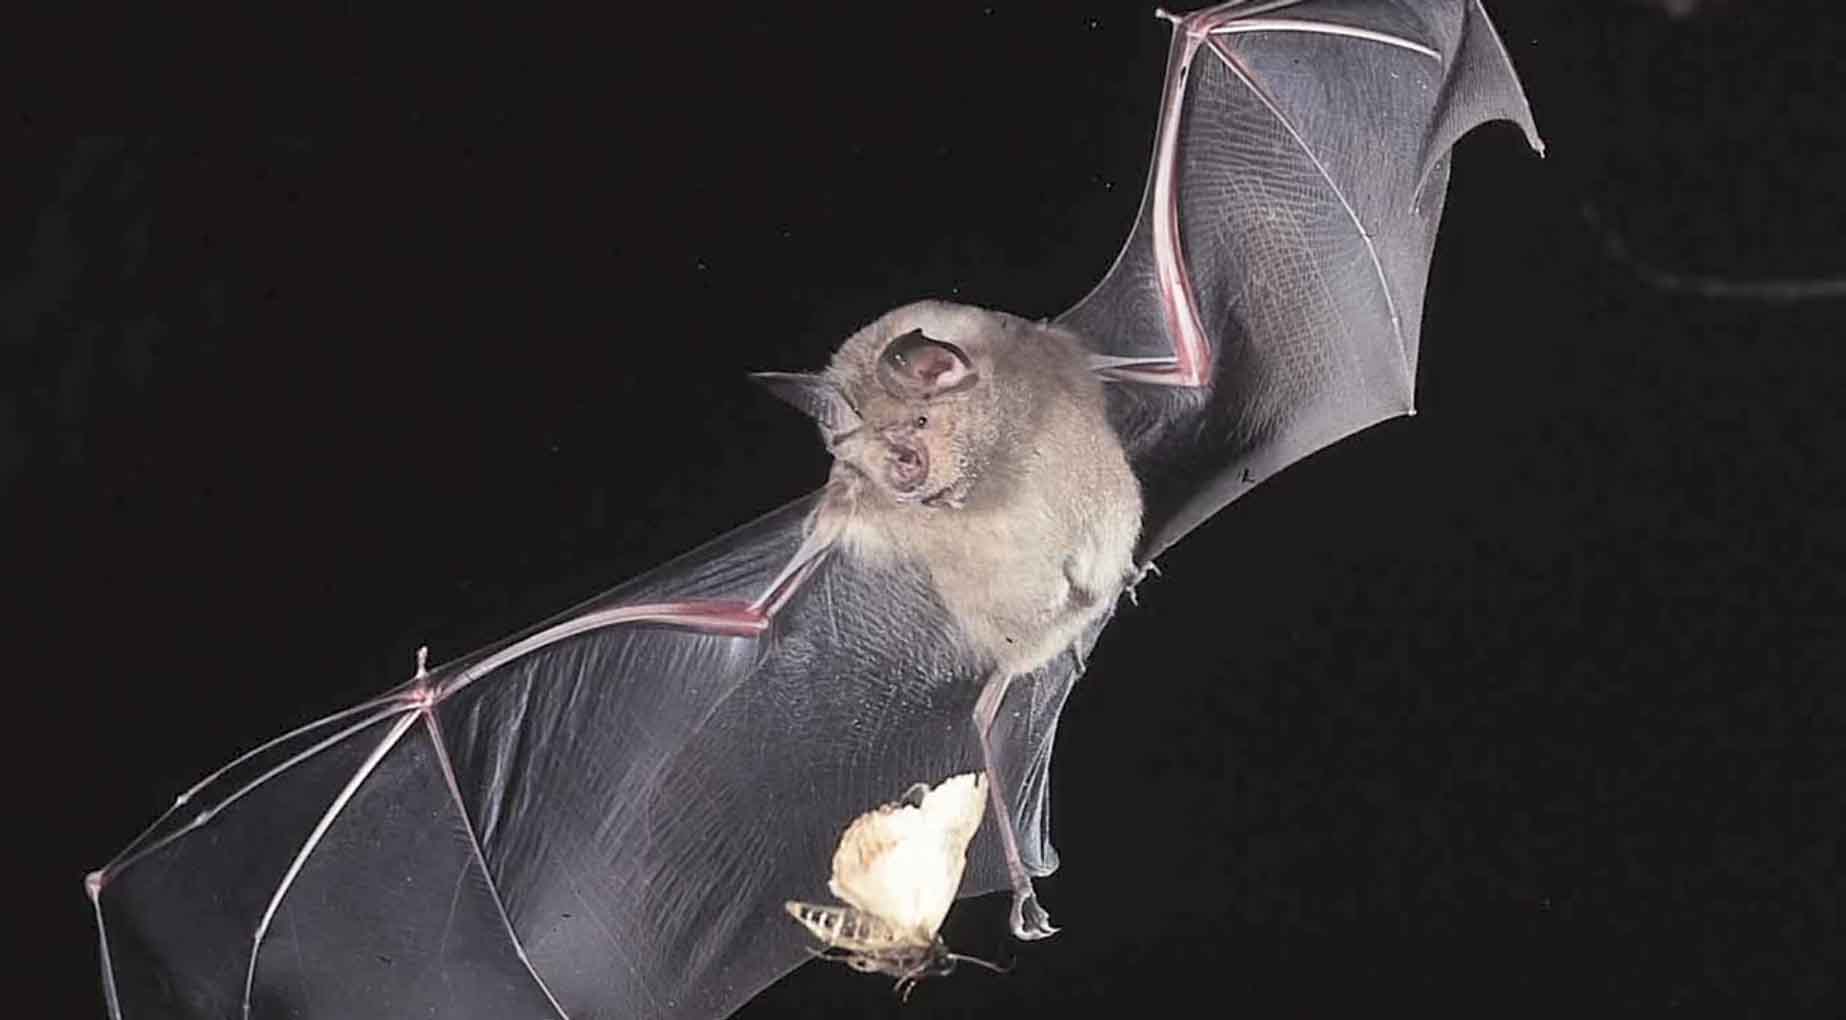 Bat Catching Moth at Night